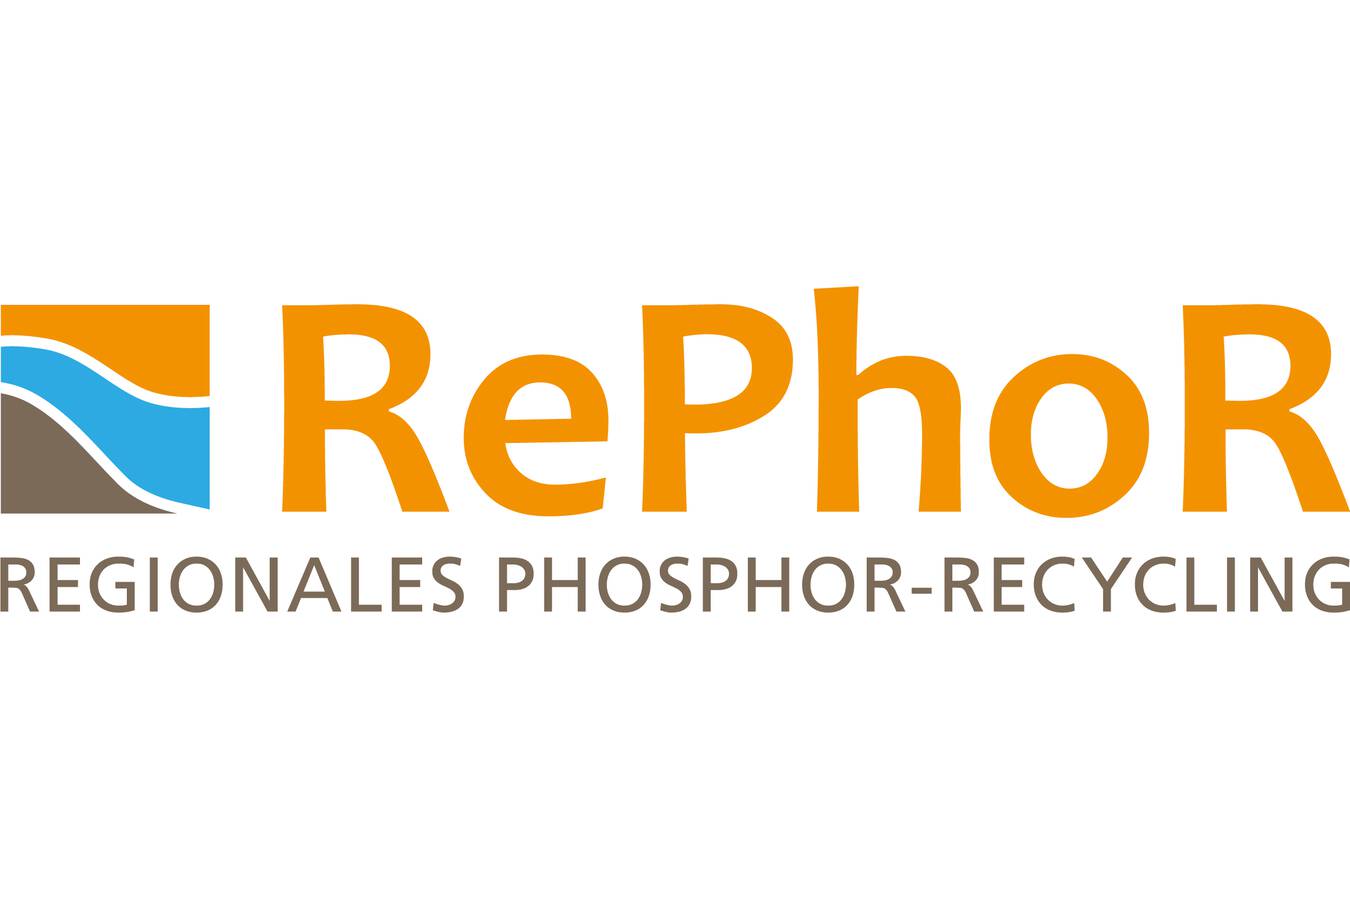 Das Verbundvorhaben RePhoRM ist ein vom Bundesministerium für Bildung und Forschung (BMBF) im Rahmen des Förderprogramms „Forschung für Nachhaltige Entwicklung (FONA3)“ gefördertes Forschungs- und Entwicklungsvorhaben zum Thema „Regionales Phosphor-Recycl